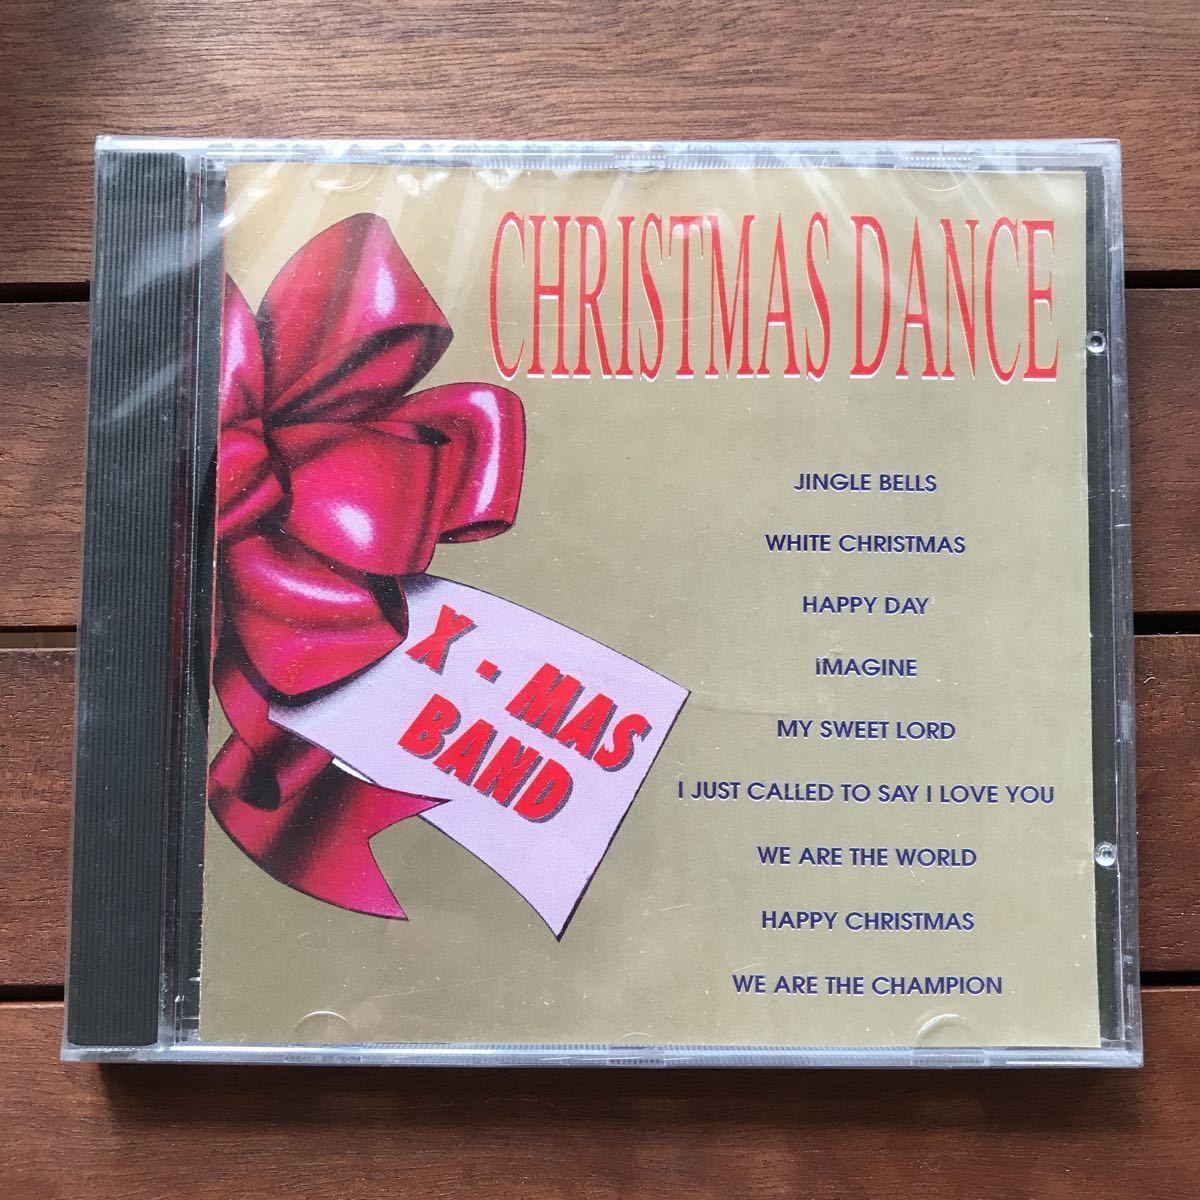 ☆【r&b】X-Mas Band / Christmas Dance［CD album］《3f200 9595》未開封品